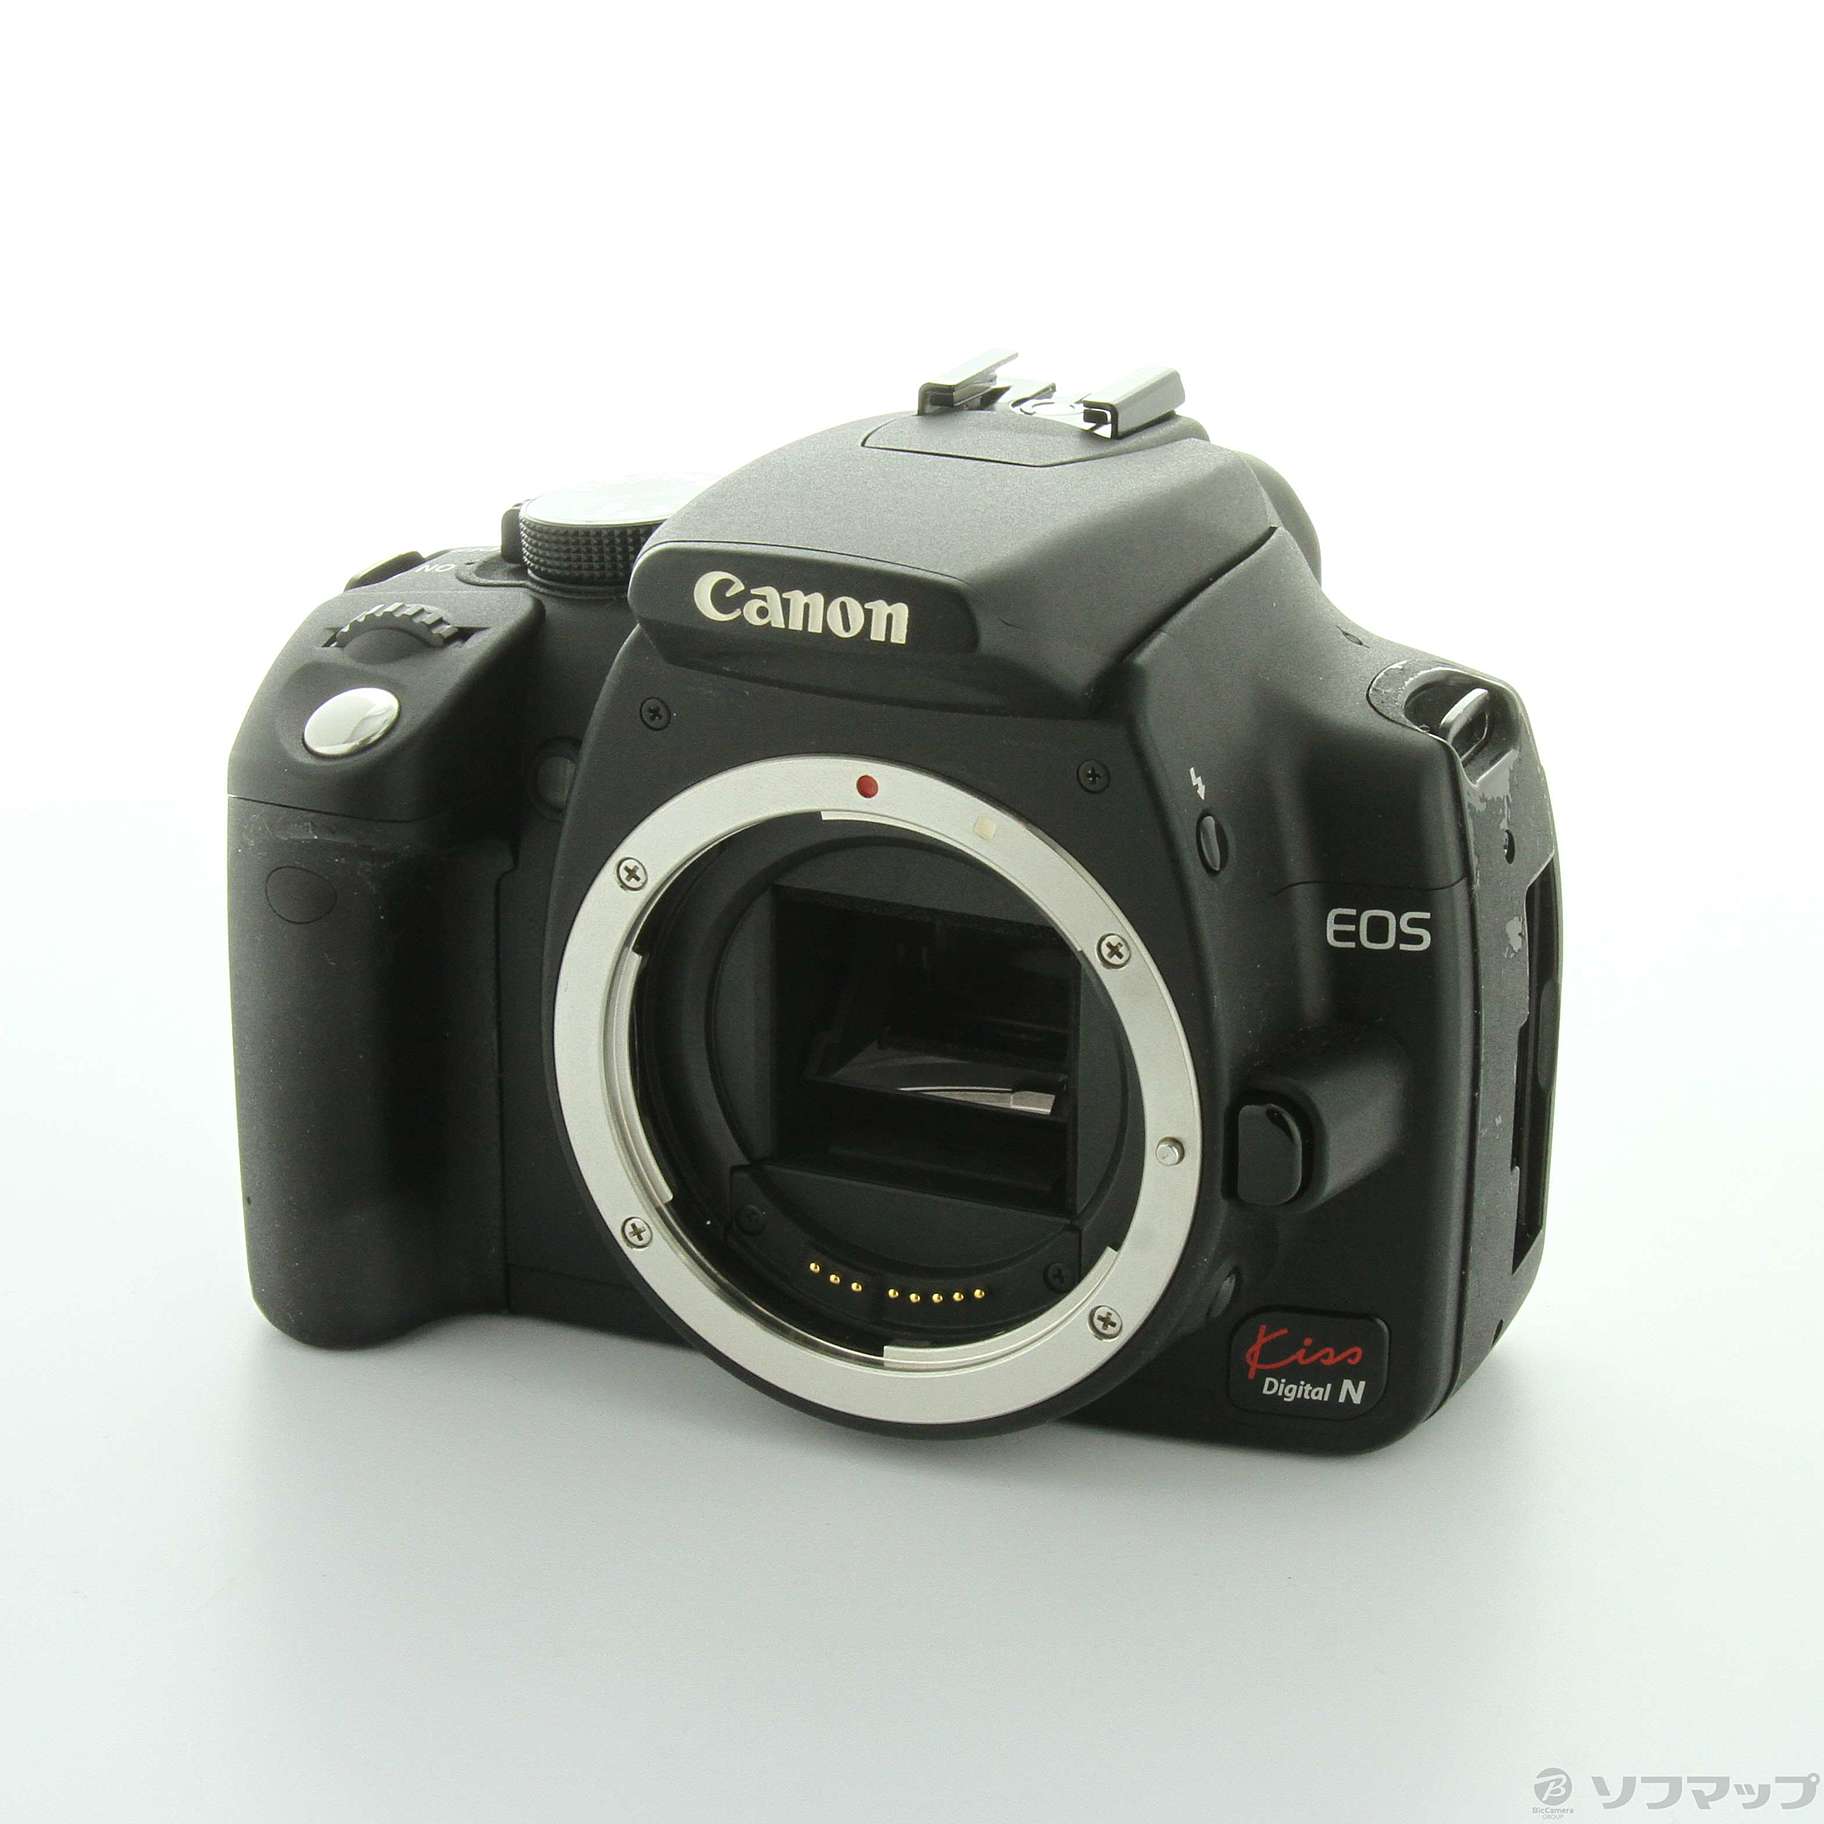 Canon EOS kiss Digital N